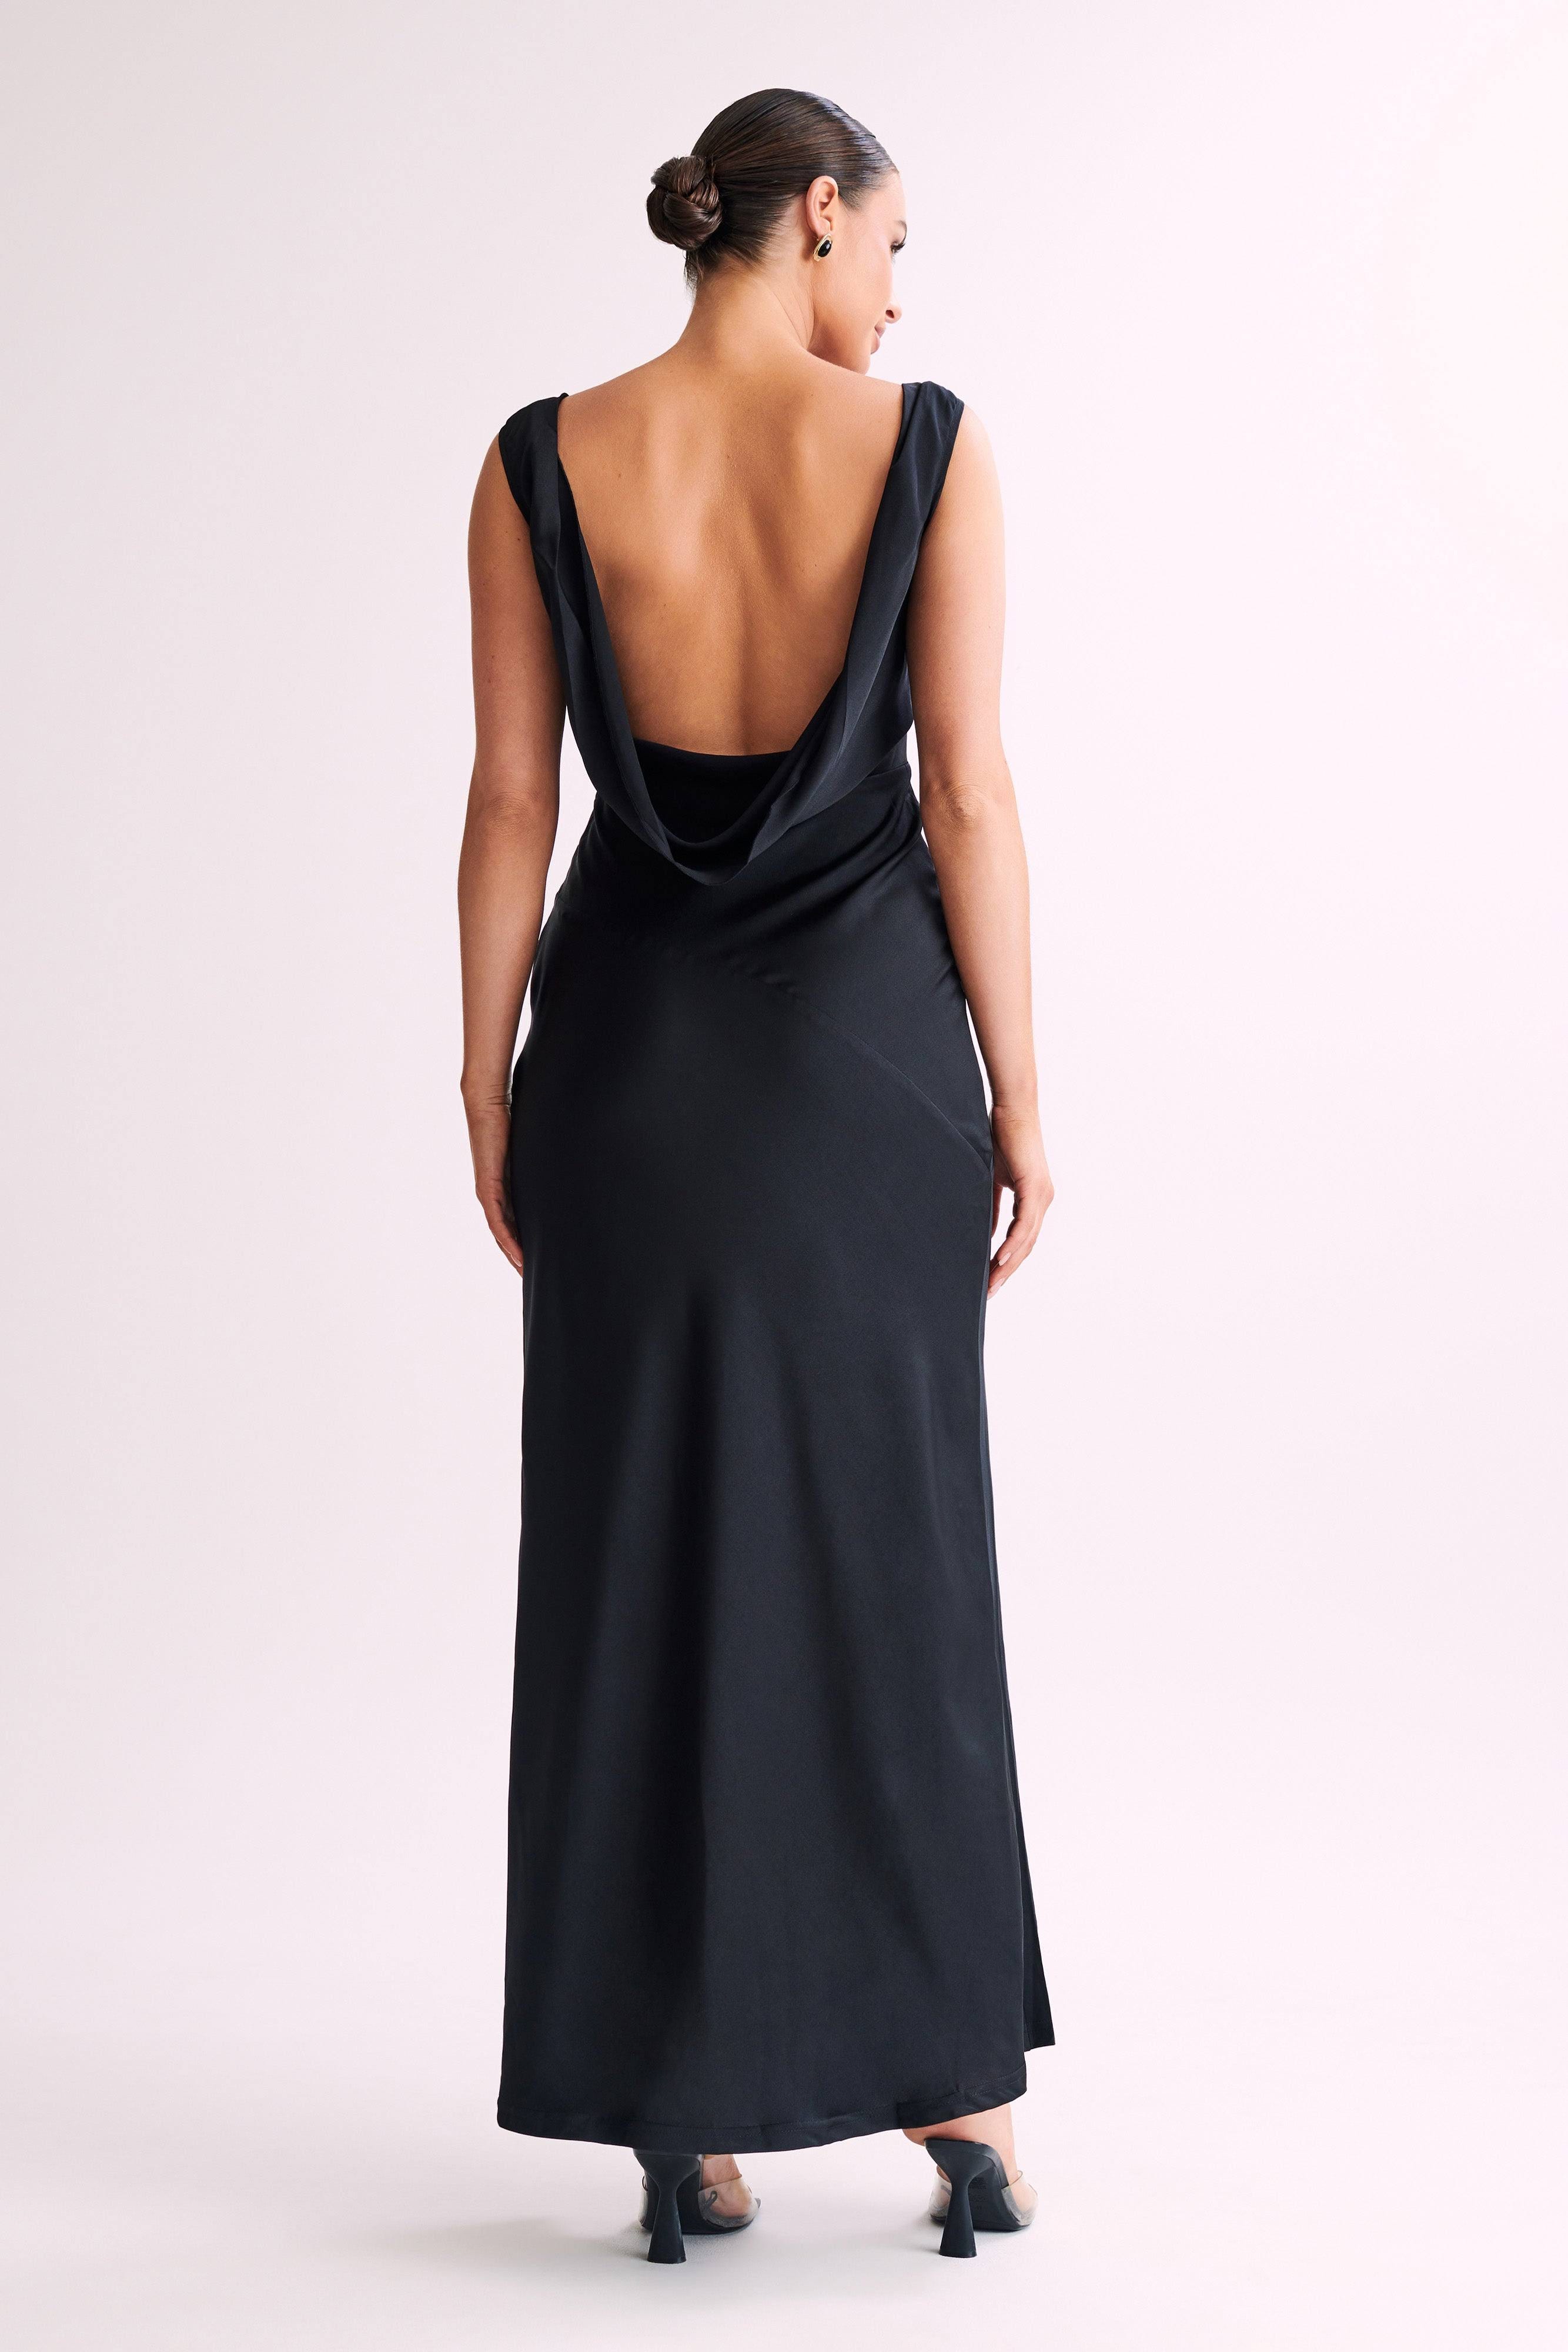 Stylish Black Maxi Satin Dress with Cowl Back | Image